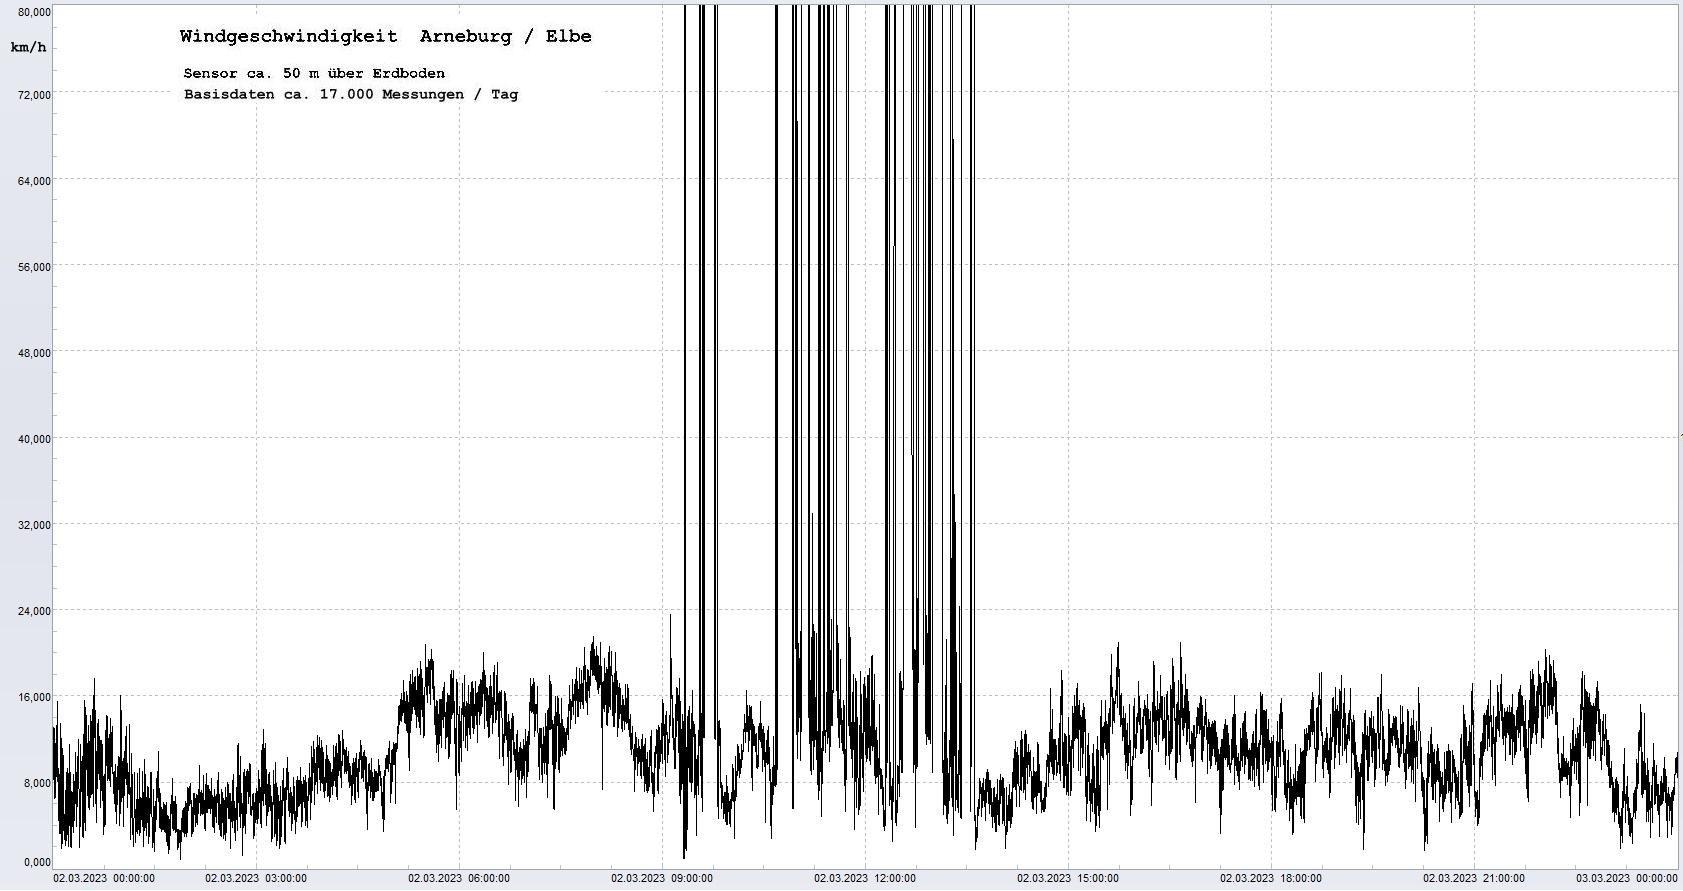 Arneburg Tages-Diagramm Winddaten, 02.03.2023
  Diagramm, Sensor auf Gebude, ca. 50 m ber Erdboden, Basis: 5s-Aufzeichnung